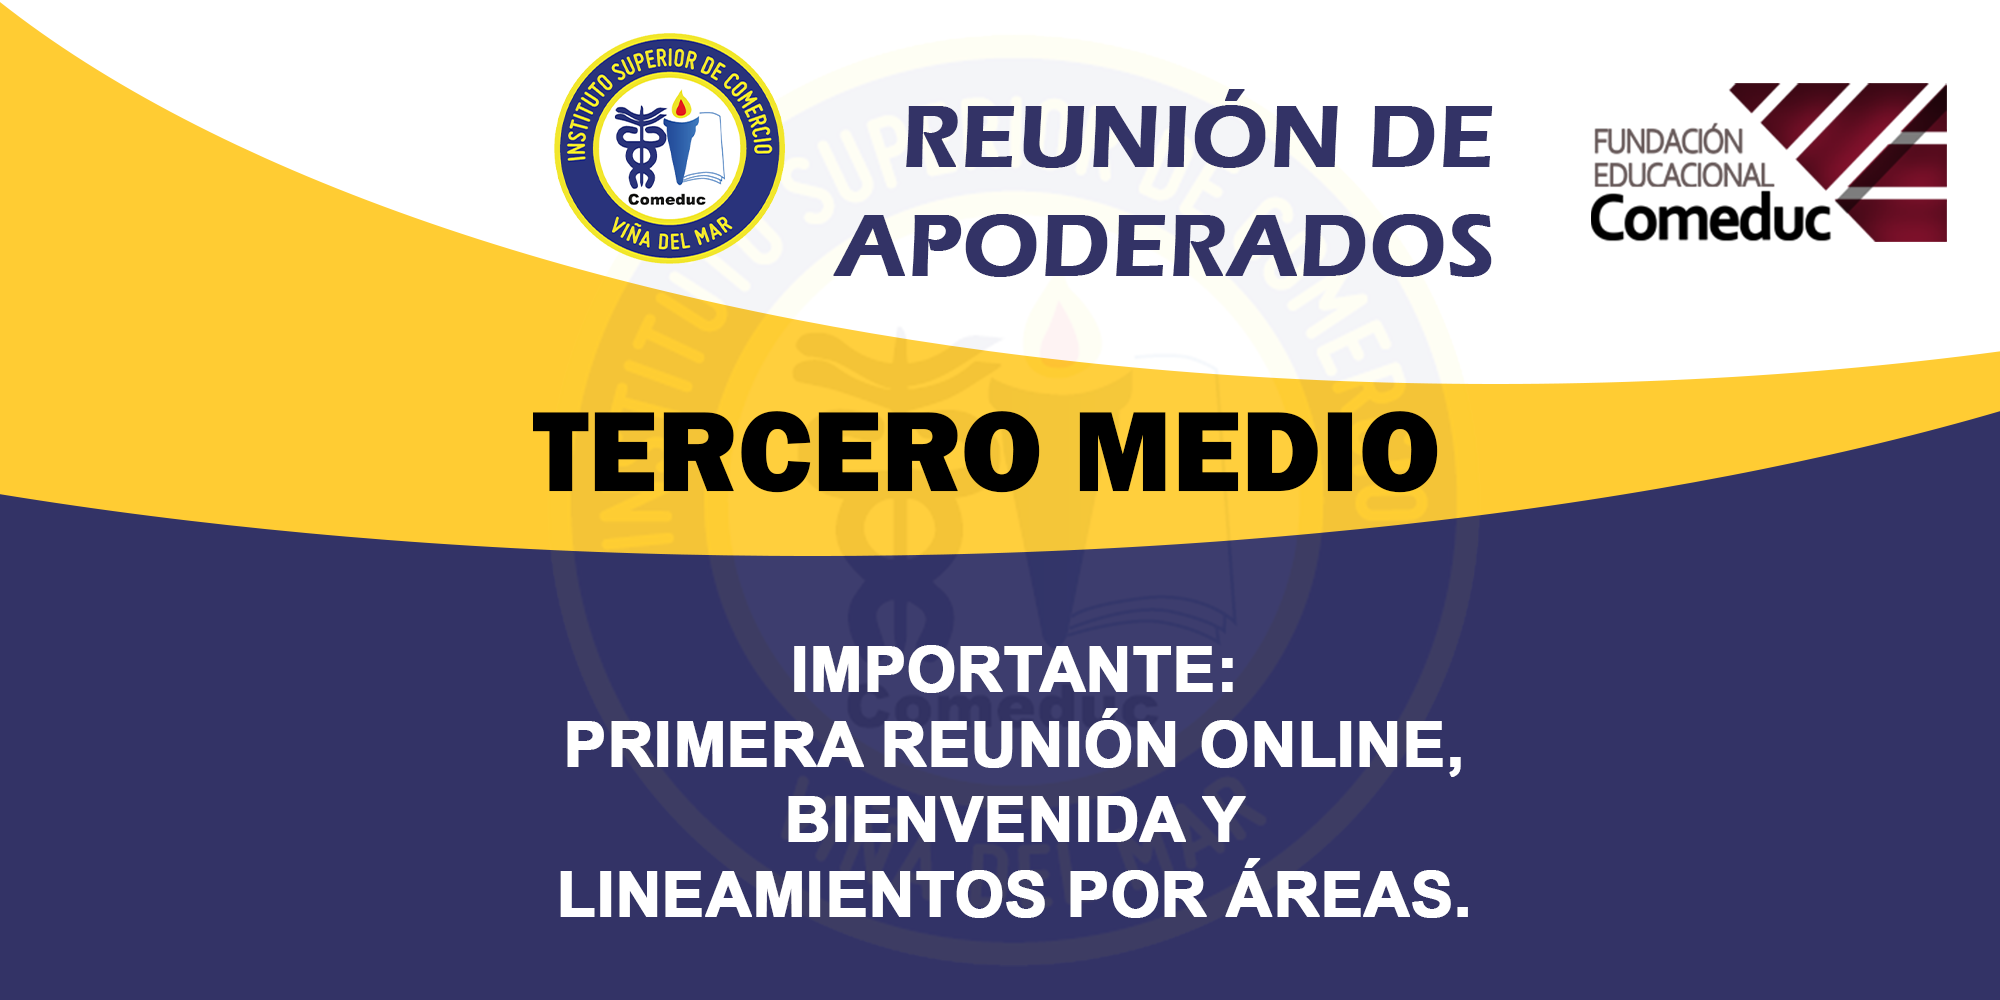 REUNIÓN DE APODERADOS TERCERO MEDIO